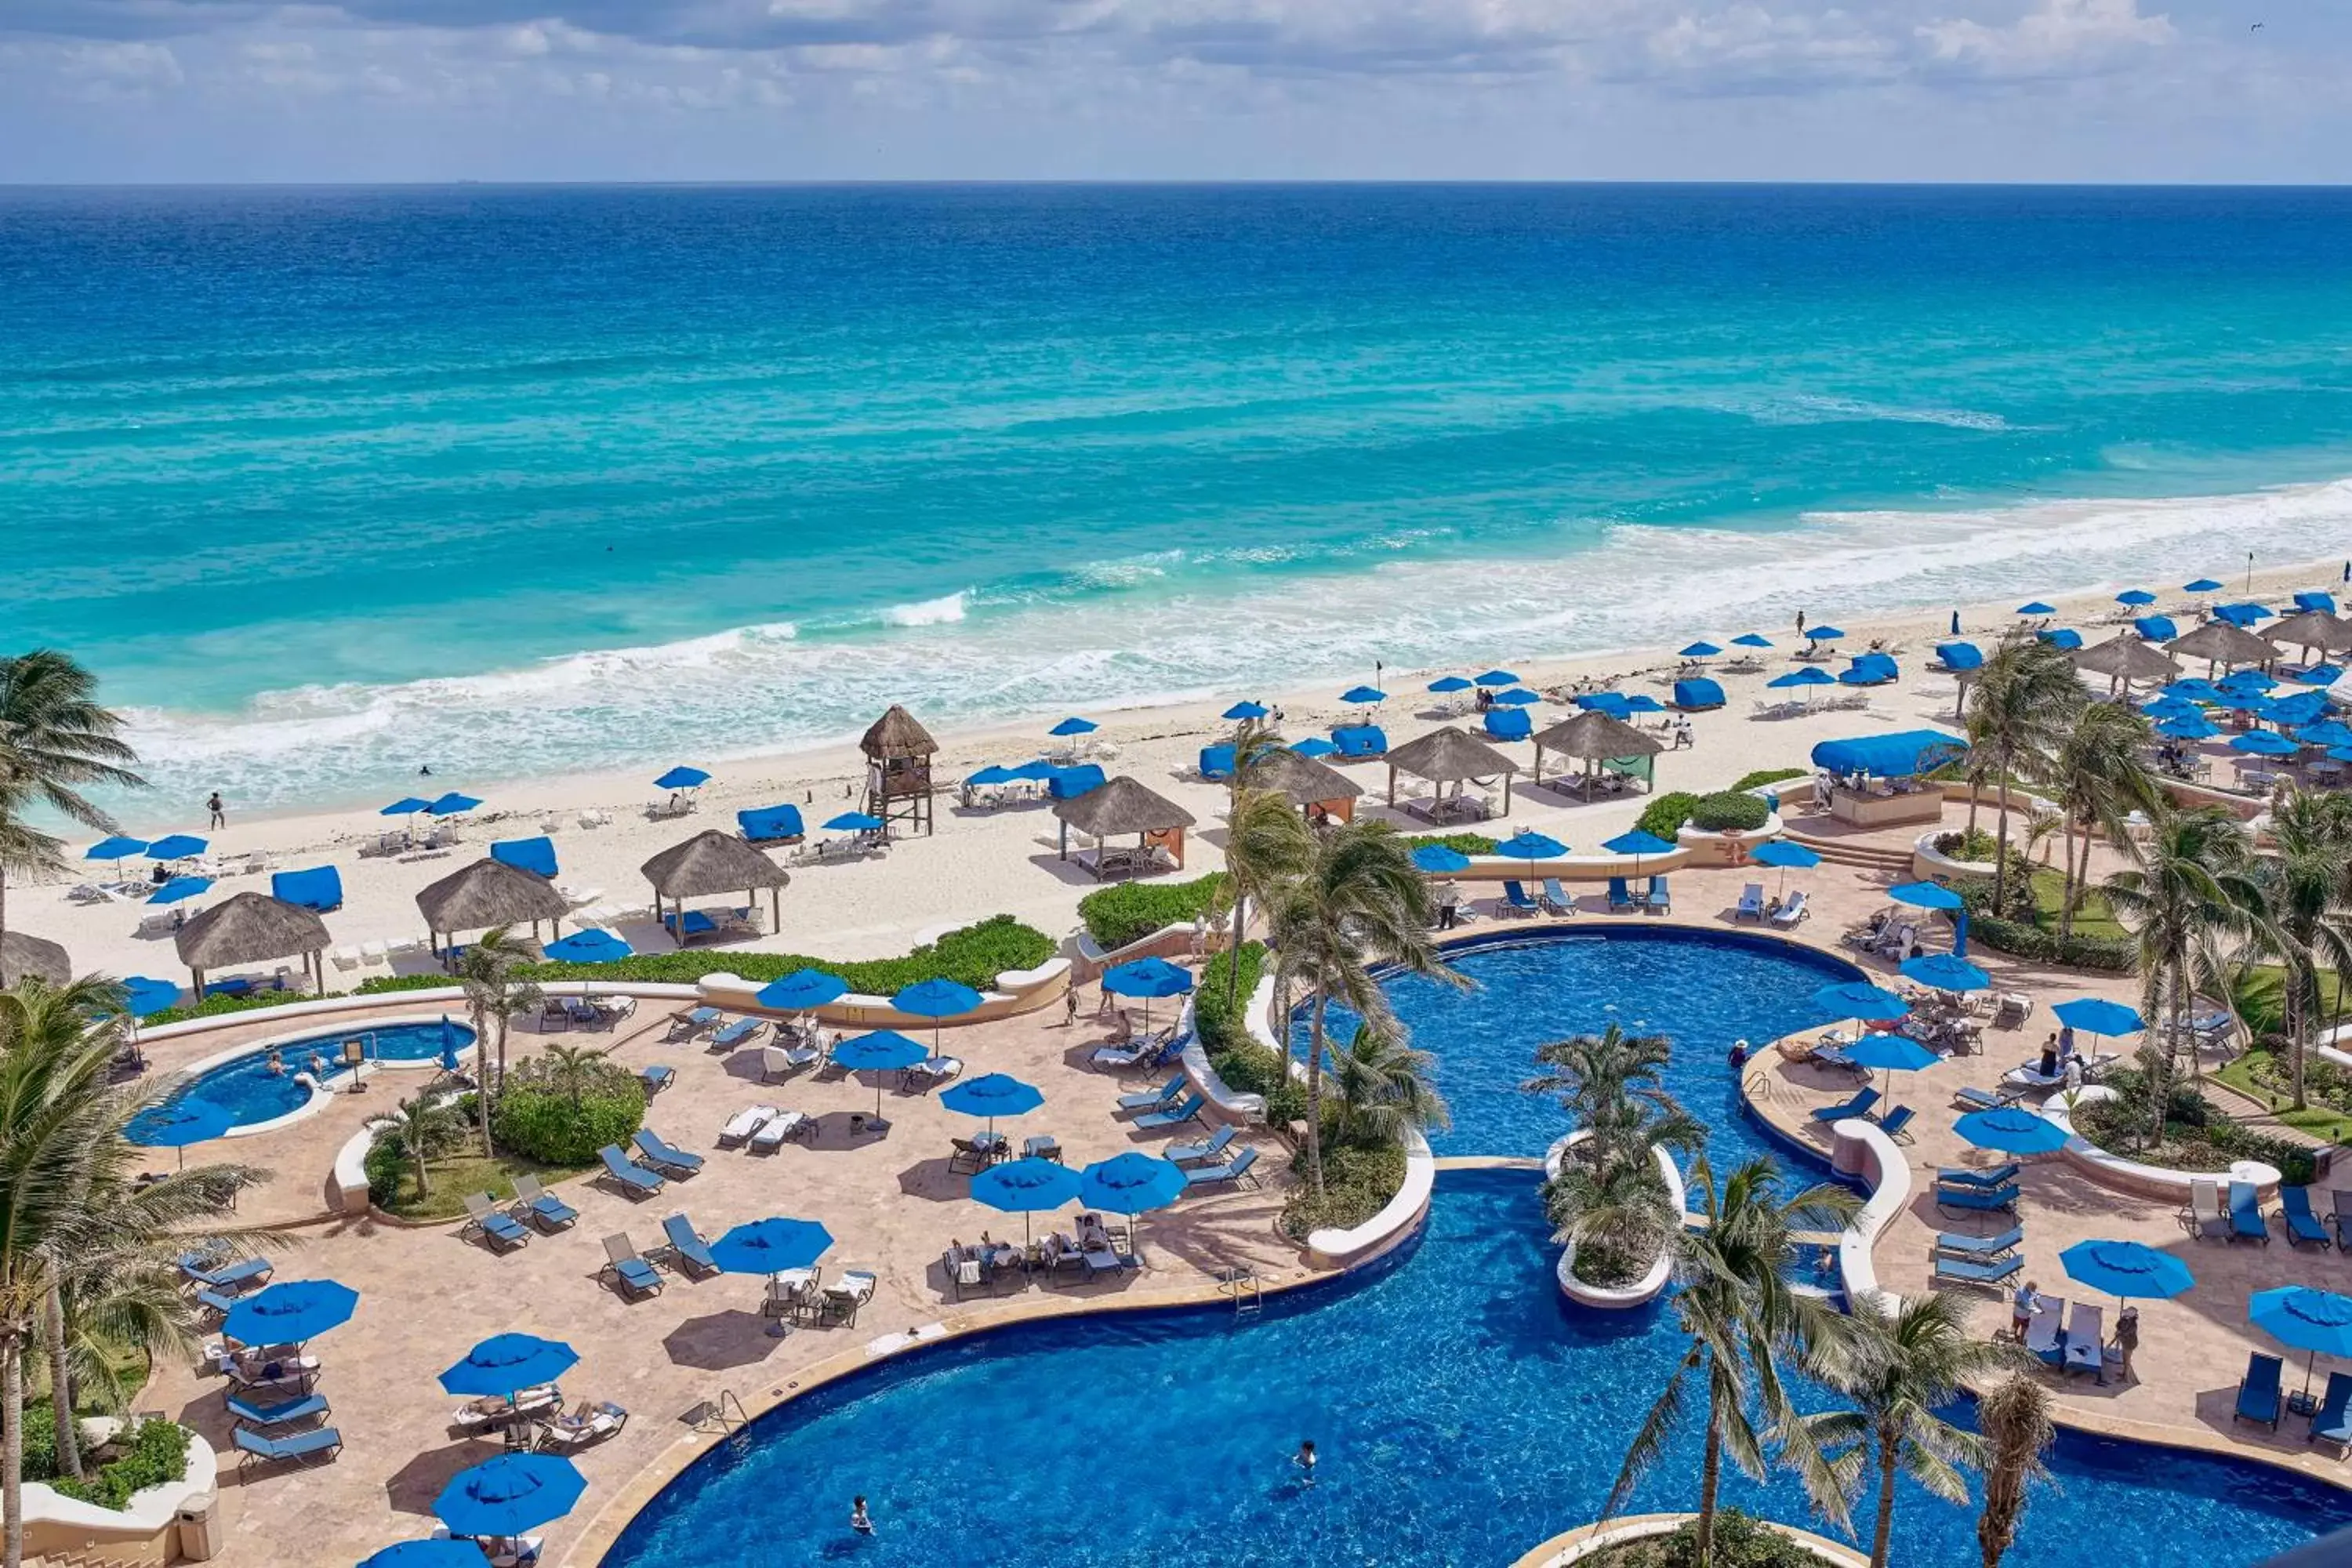 Beach, Pool View in Kempinski Hotel Cancun